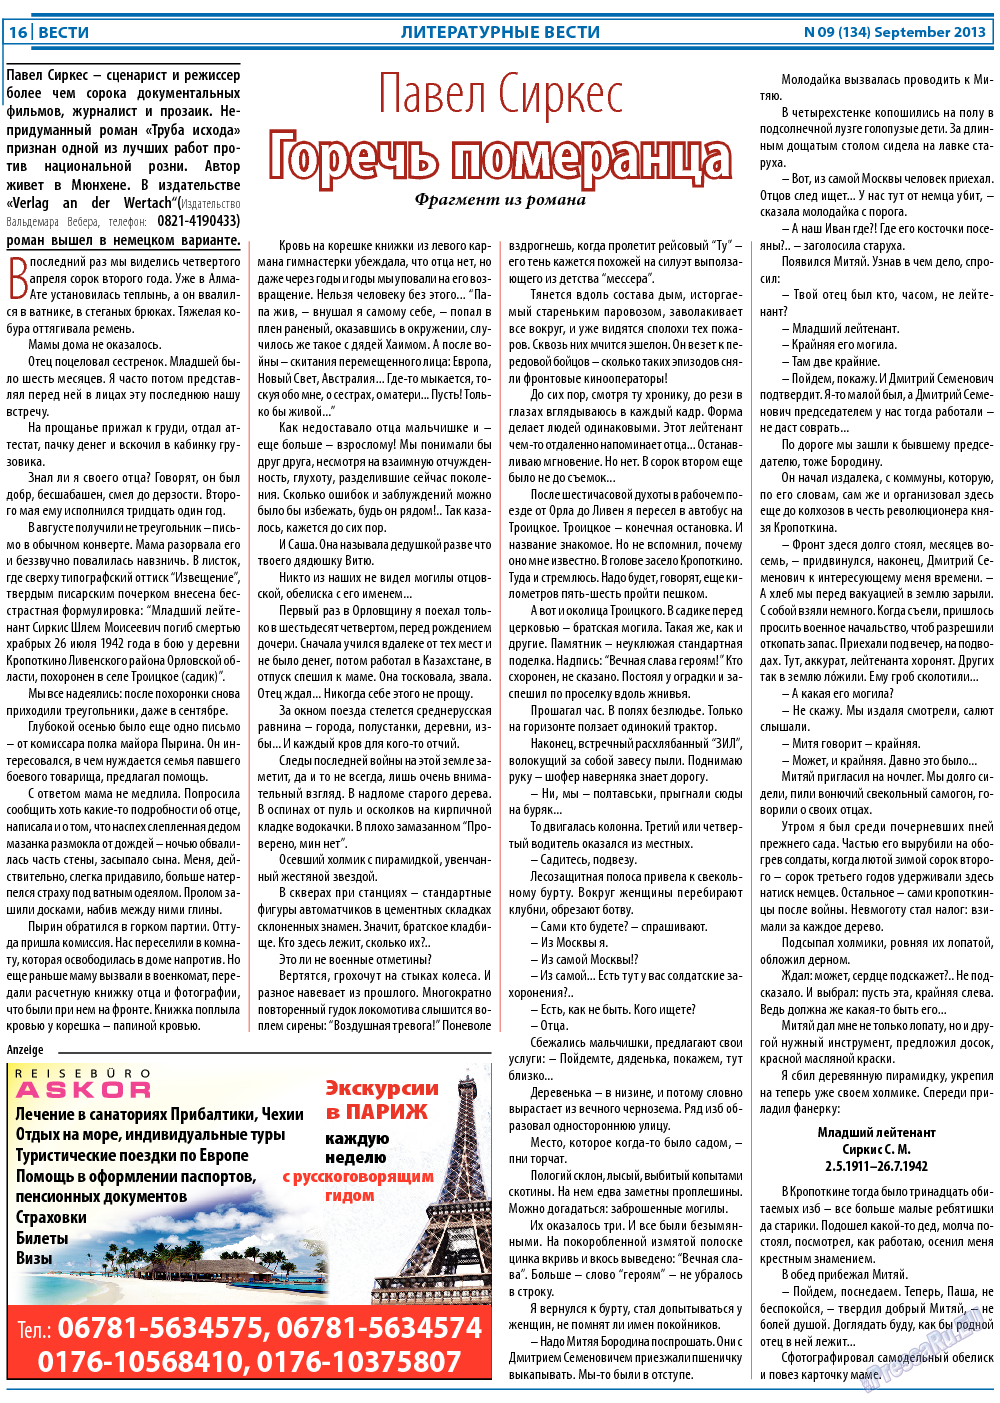 Вести, газета. 2013 №9 стр.16